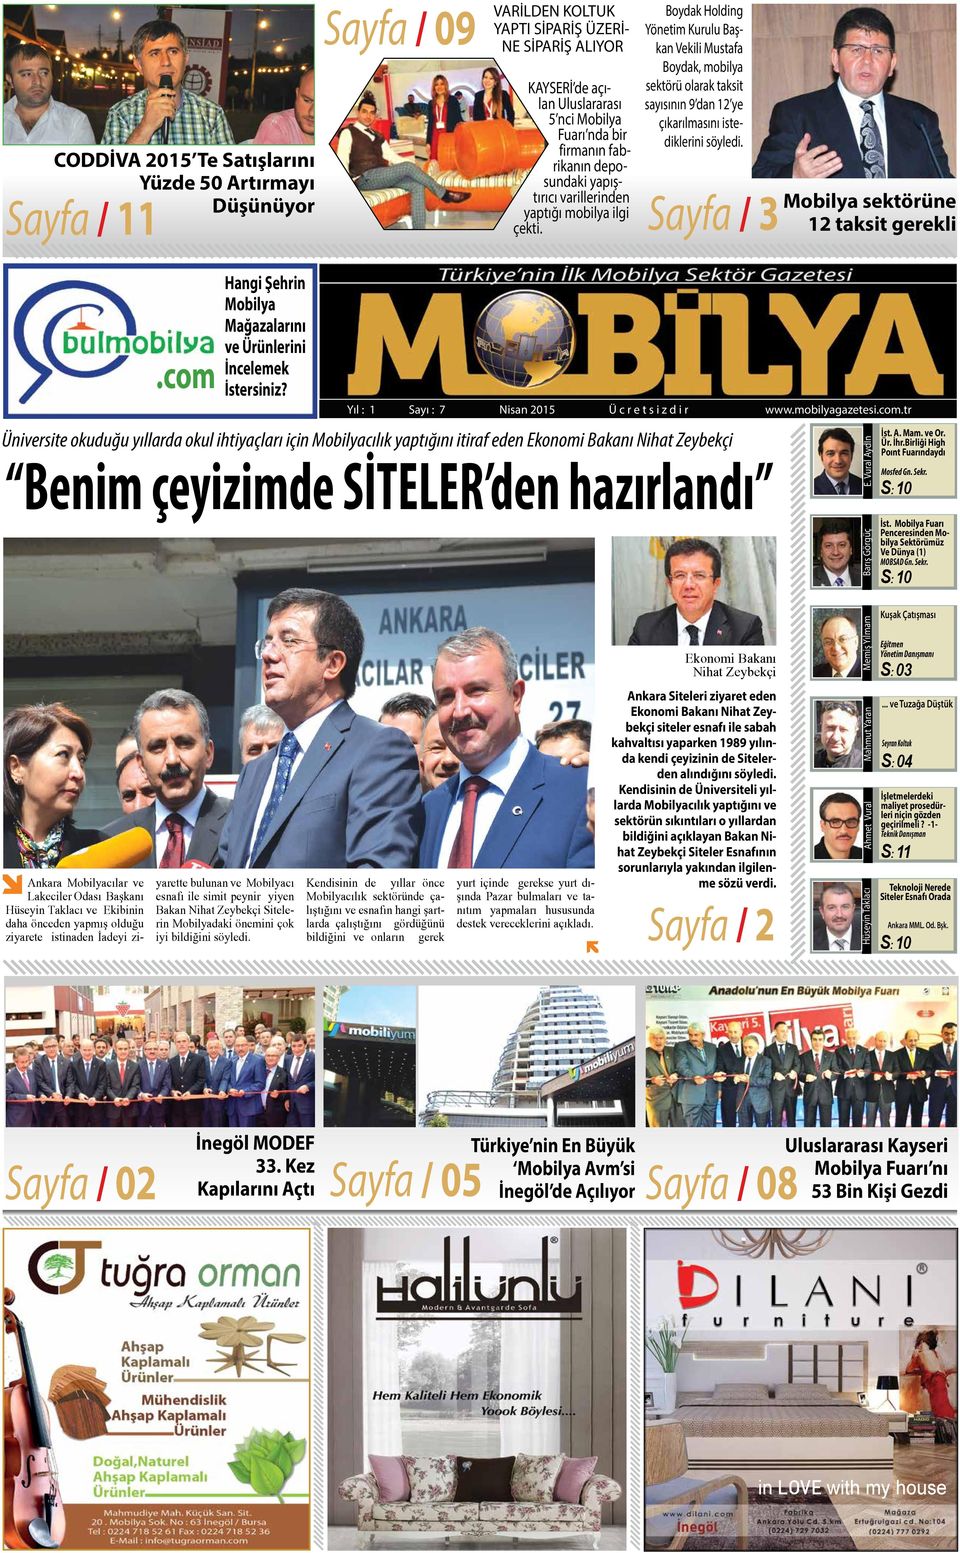 Boydak Holding Yönetim Kurulu Başkan Vekili Mustafa Boydak, mobilya sektörü olarak taksit sayısının 9 dan 12 ye çıkarılmasını istediklerini söyledi. Sayfa / 3 Mobilya sektörüne 12 taksit gerekli.